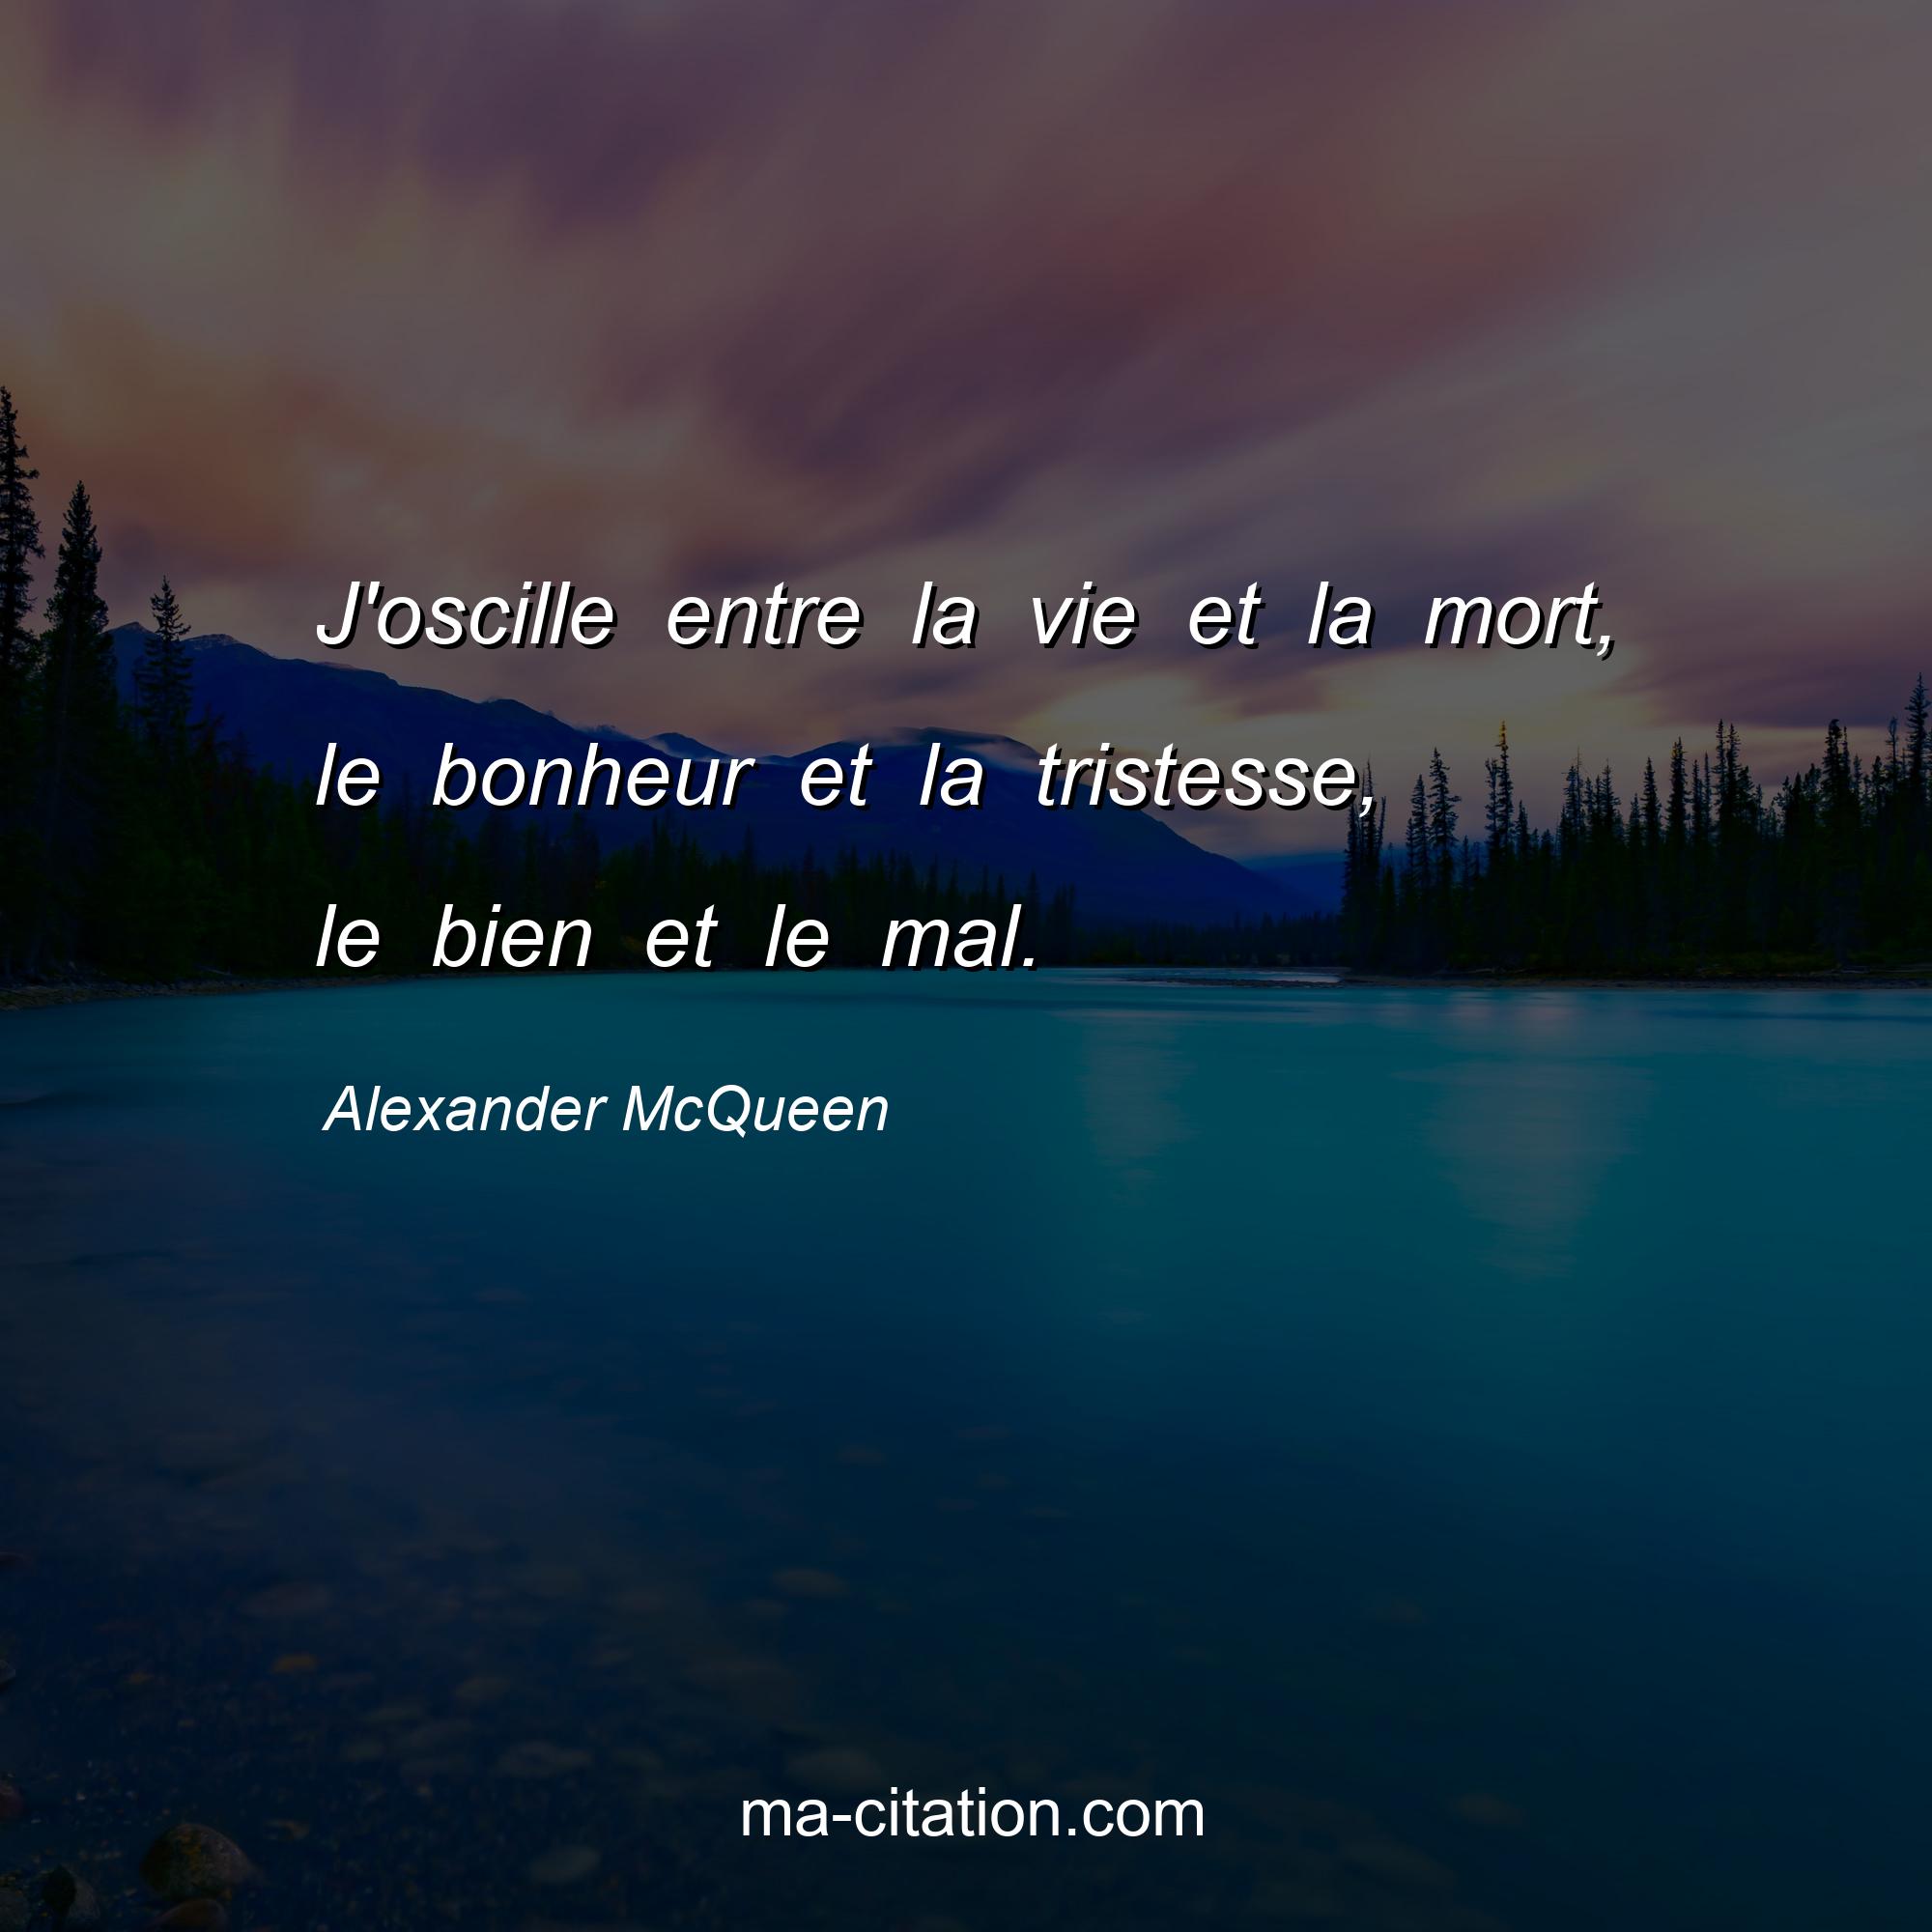 Alexander McQueen : J'oscille entre la vie et la mort, le bonheur et la tristesse, le bien et le mal.